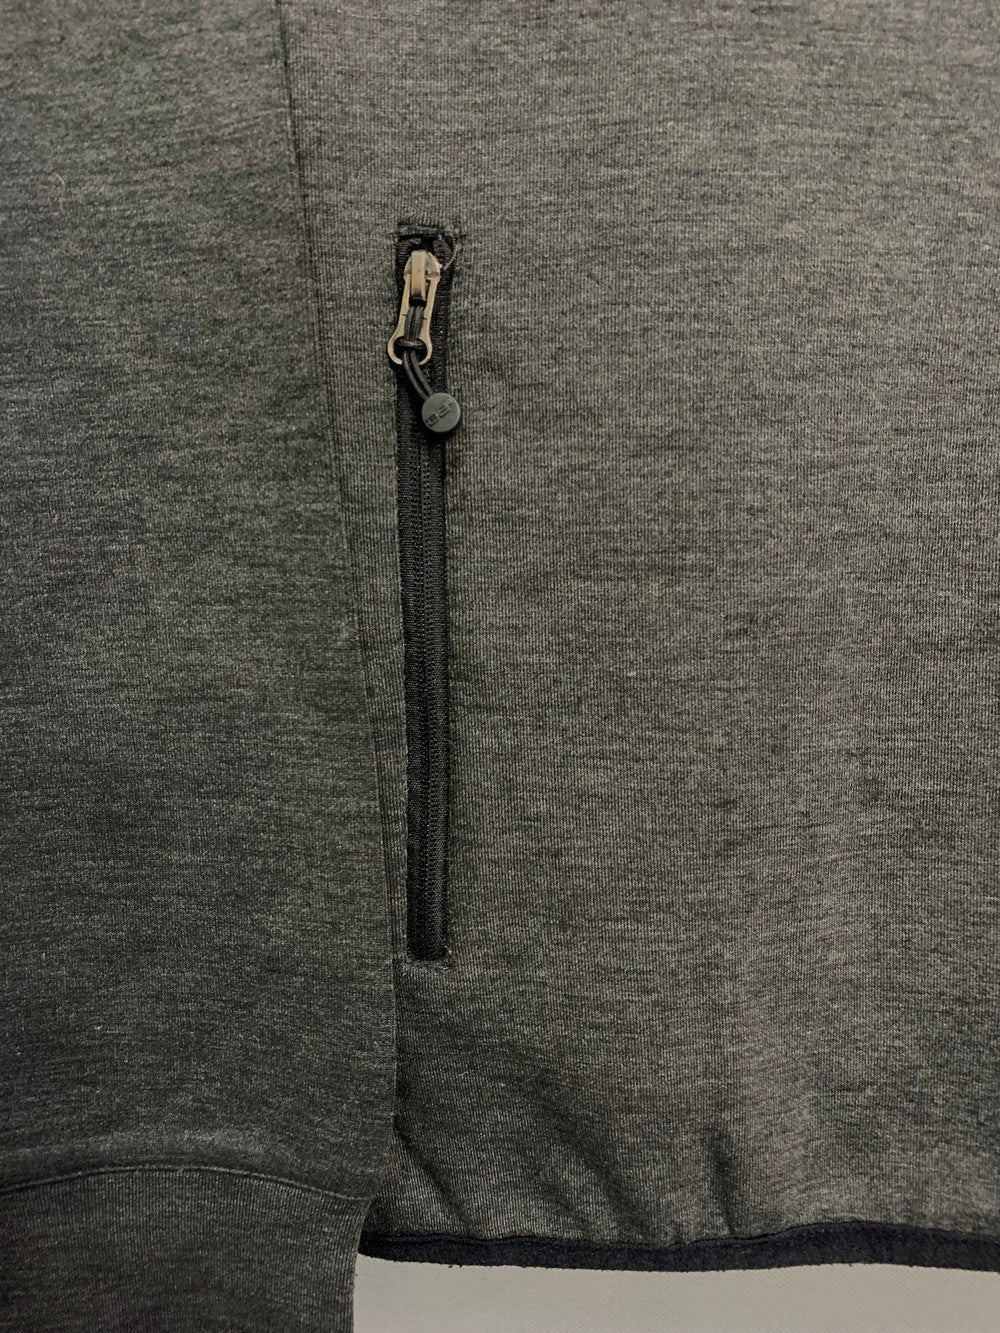 32 Degrees Branded Original Sports Hood Zipper For Men